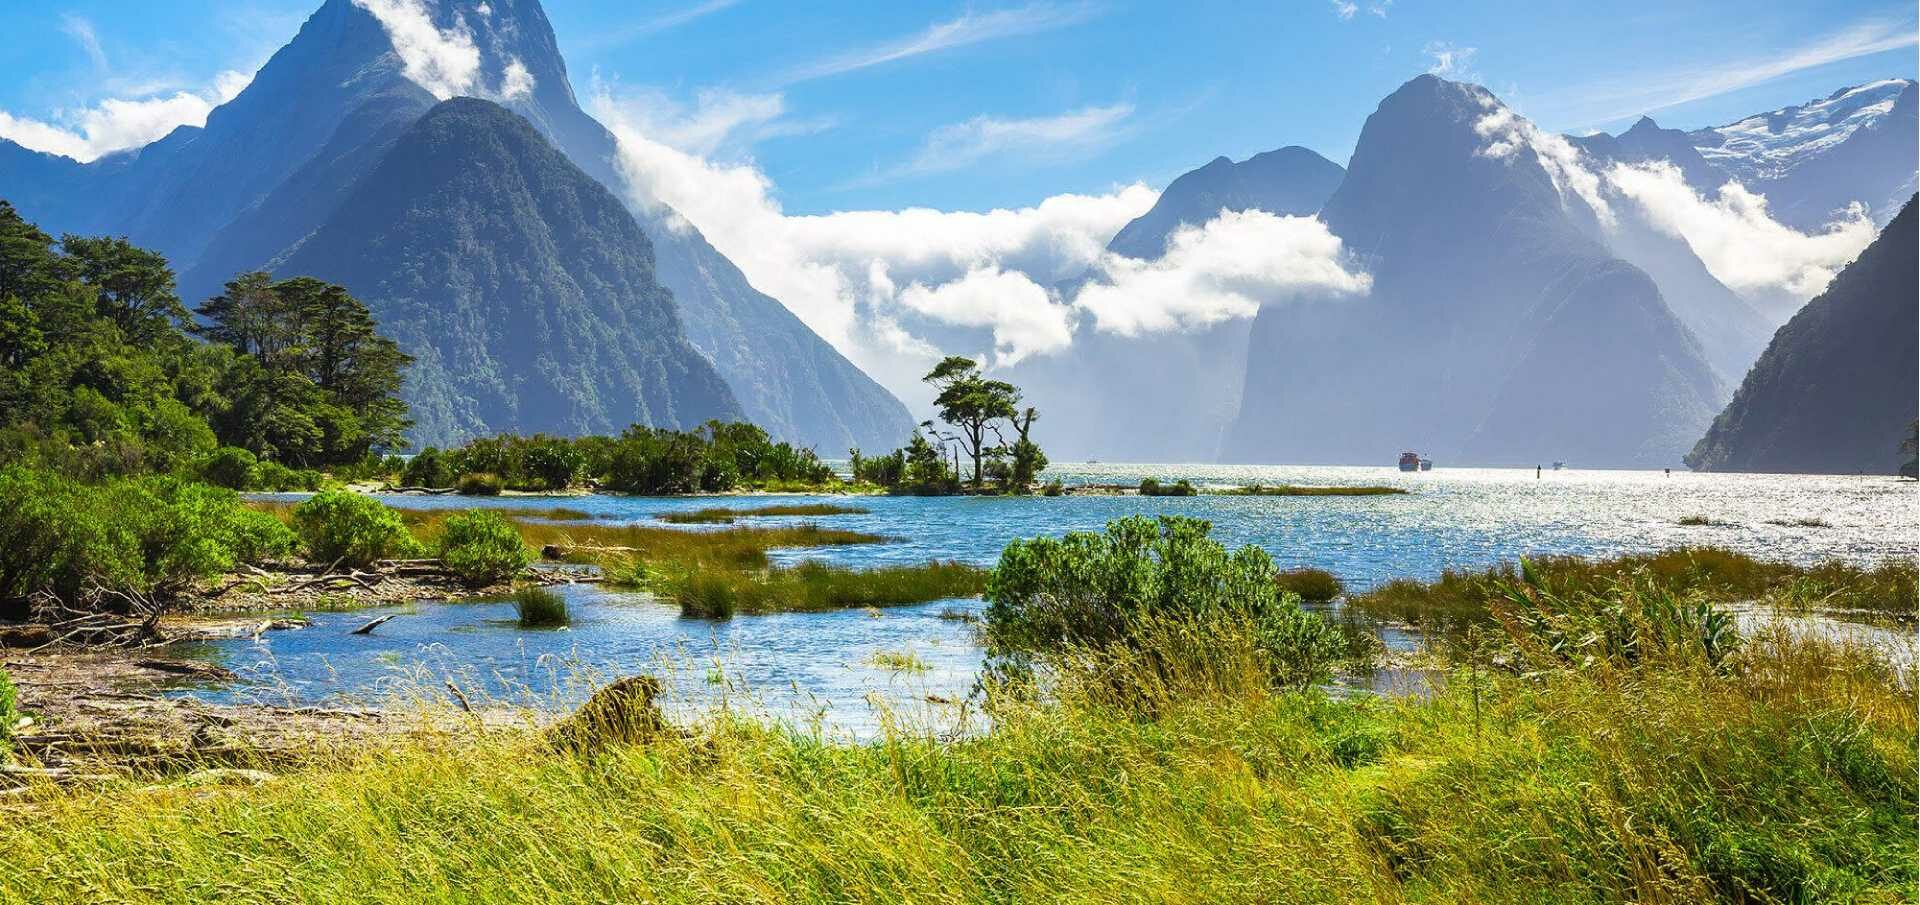 В Новой Зеландии объявлена чрезвычайная ситуация из-за изменения климата  